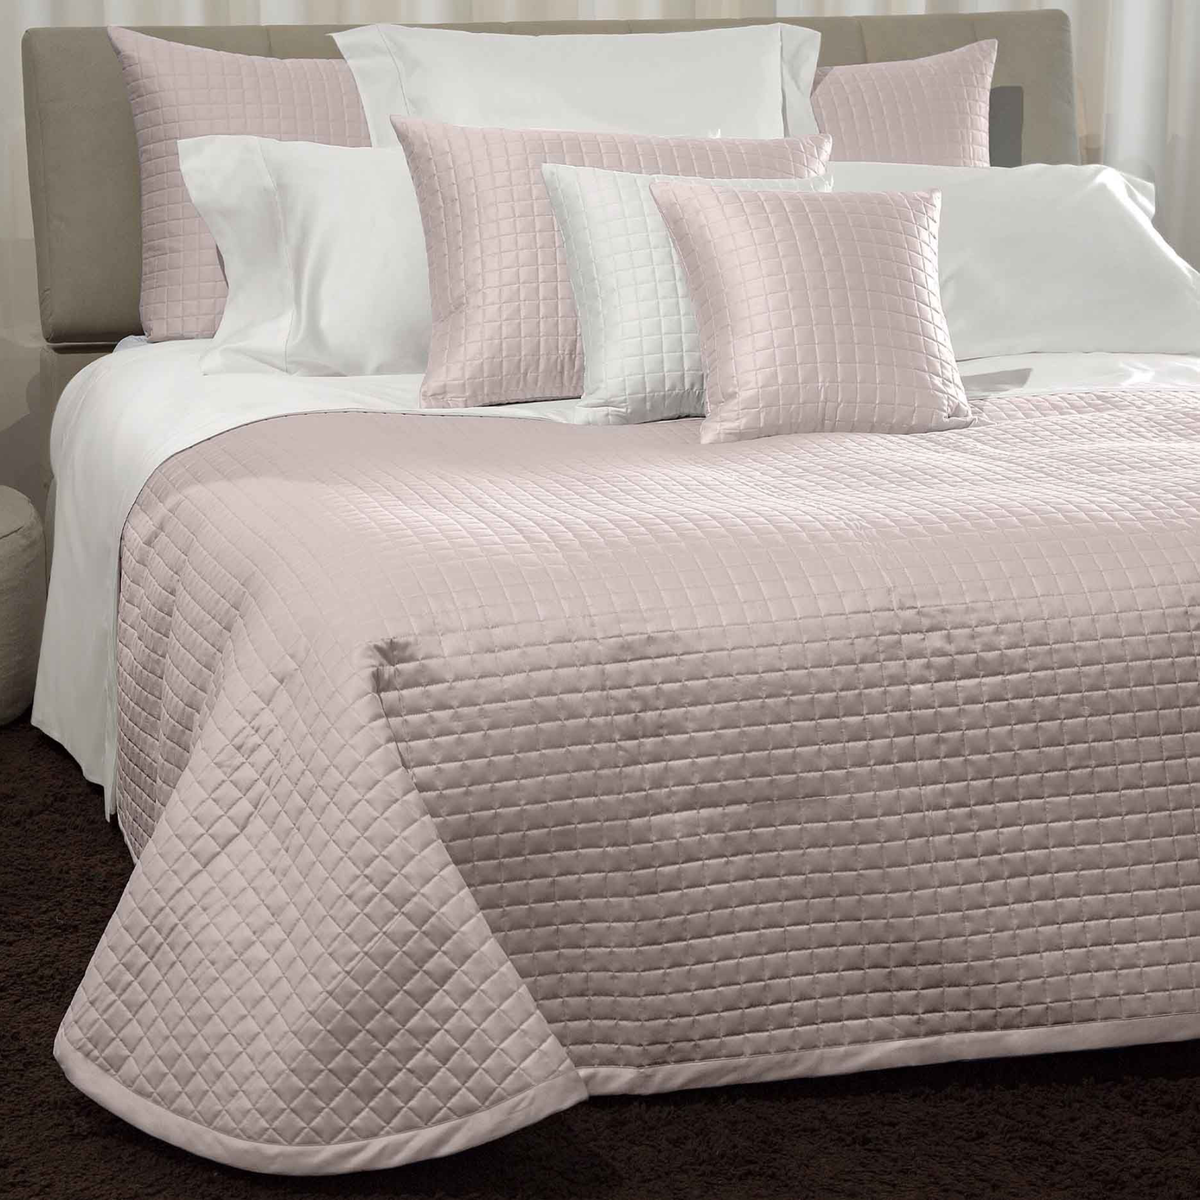 Bed Dressed in Signoria Masaccio Bedding in Rose Quartz Color